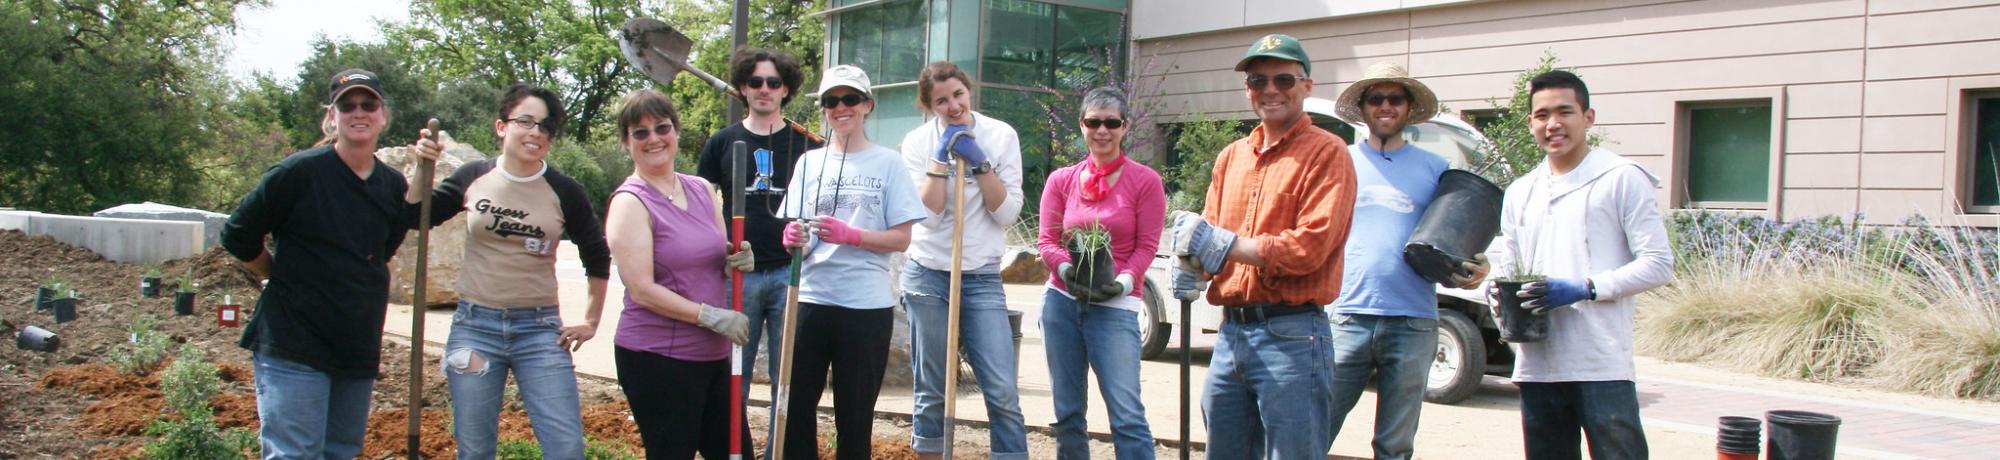 Image of staff, students and volunteers in the UC Davis California Rock Garden.